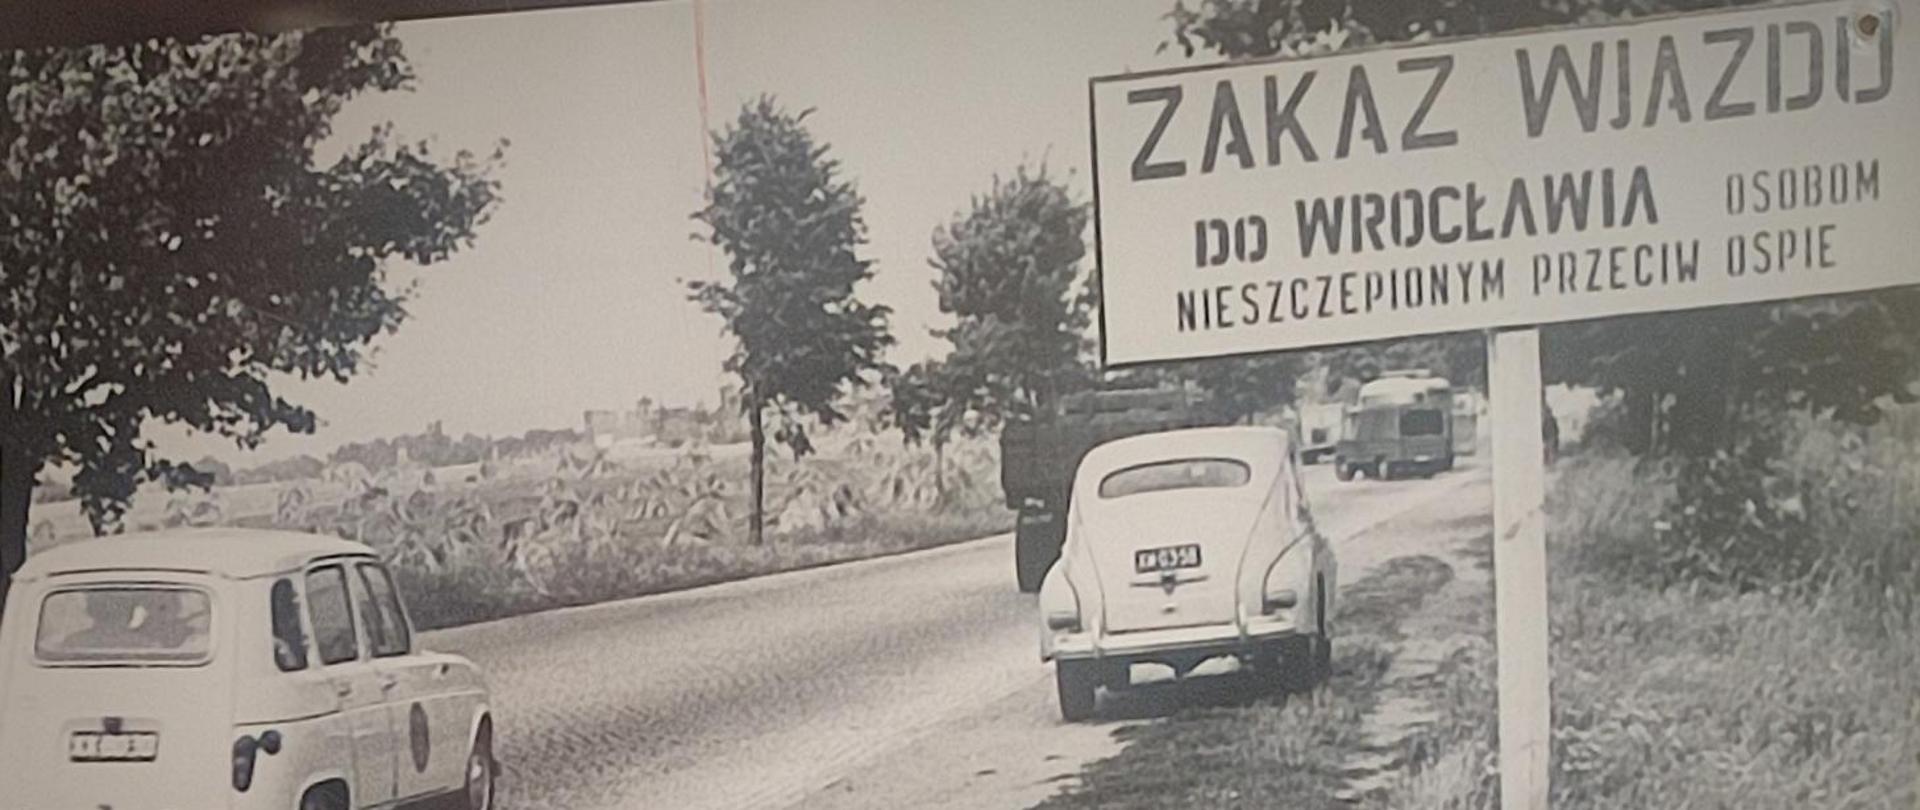 Czarno-białe zdjęcie historyczne przedstawiające najprawdopodobniej drogę wjazdową do Wrocławia. Po prawej stronie drogi widać znak z napisem: "ZAKAZ WJAZDU DO WROCŁAWIA OSOBOM NIESZCEPIONYM PRZECIW OSPIE".